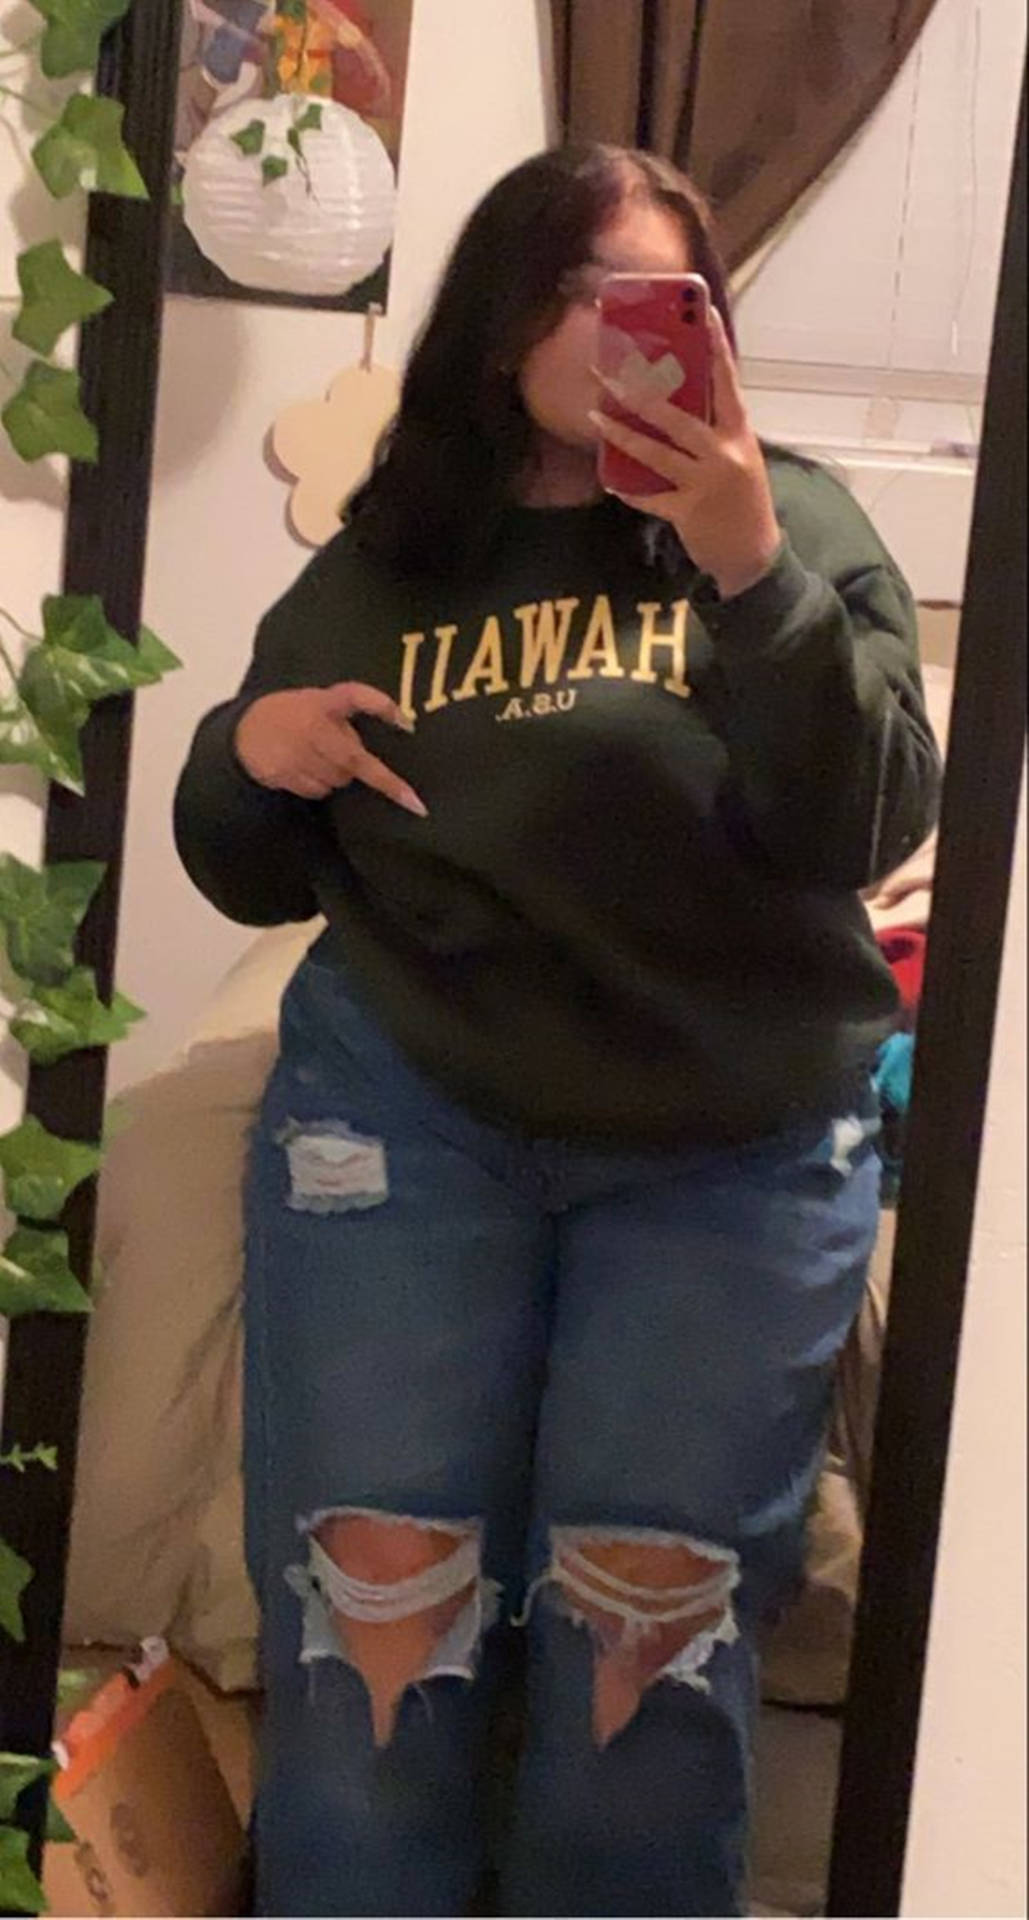 Chubby Teen Hawaii Sweatshirt Wallpaper